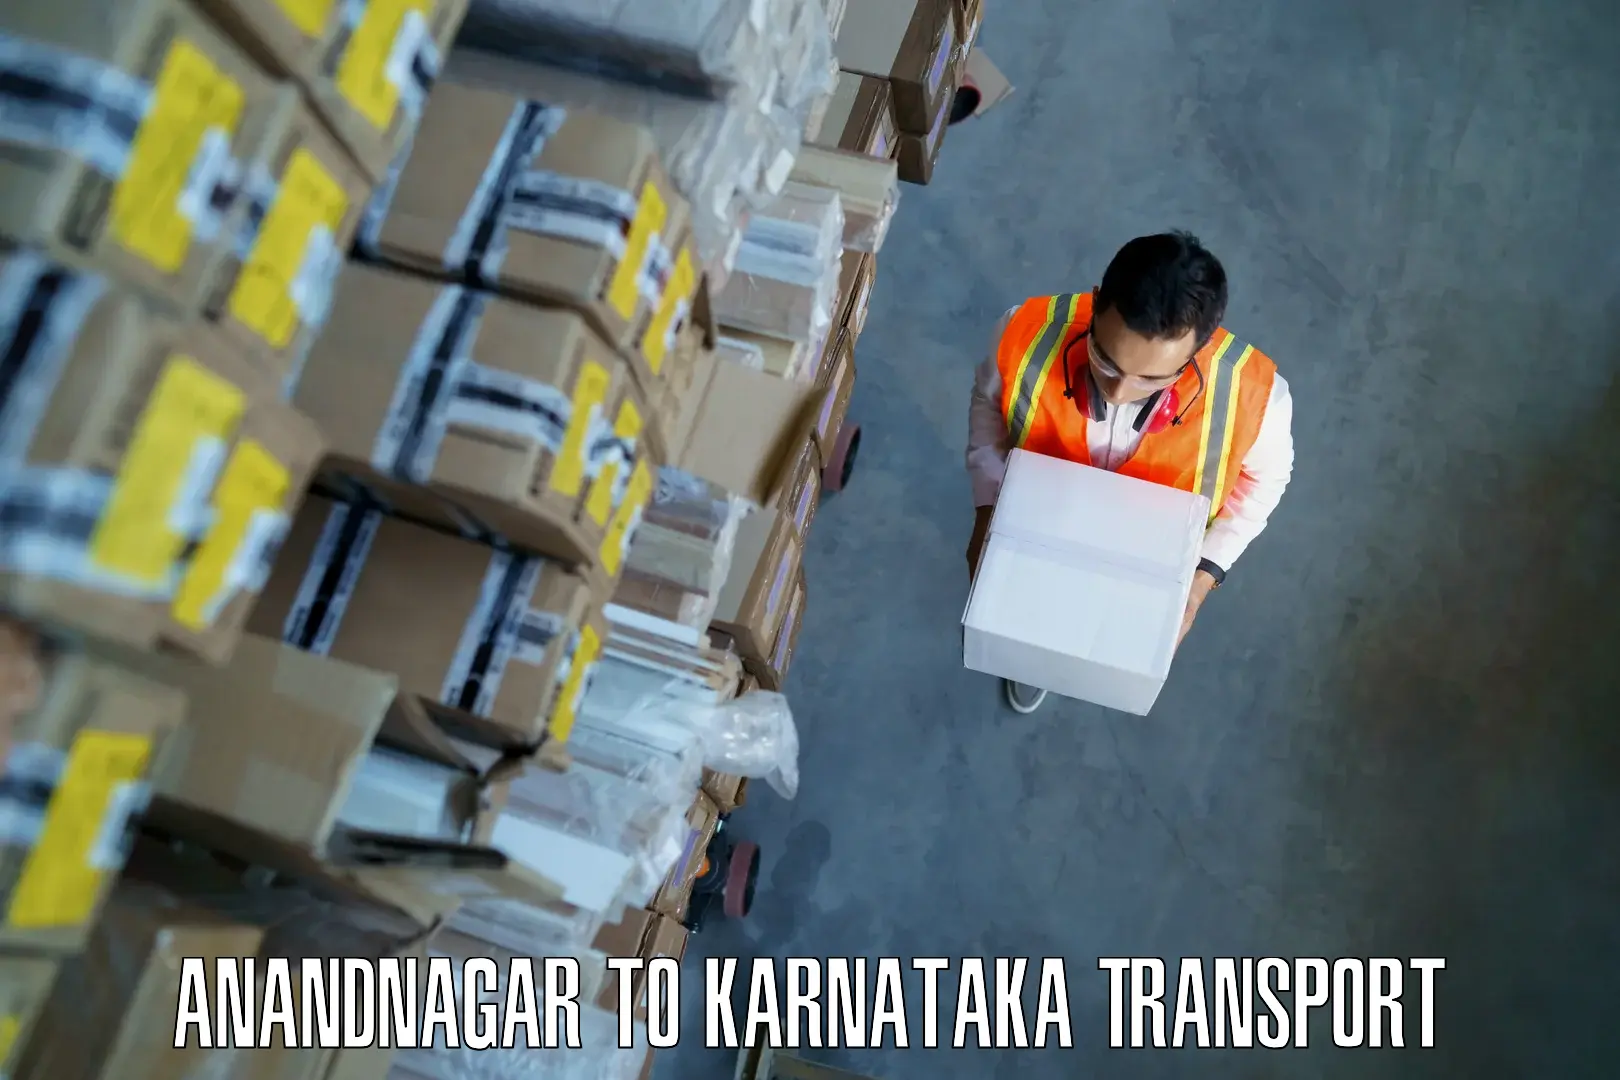 Land transport services Anandnagar to Devanahalli